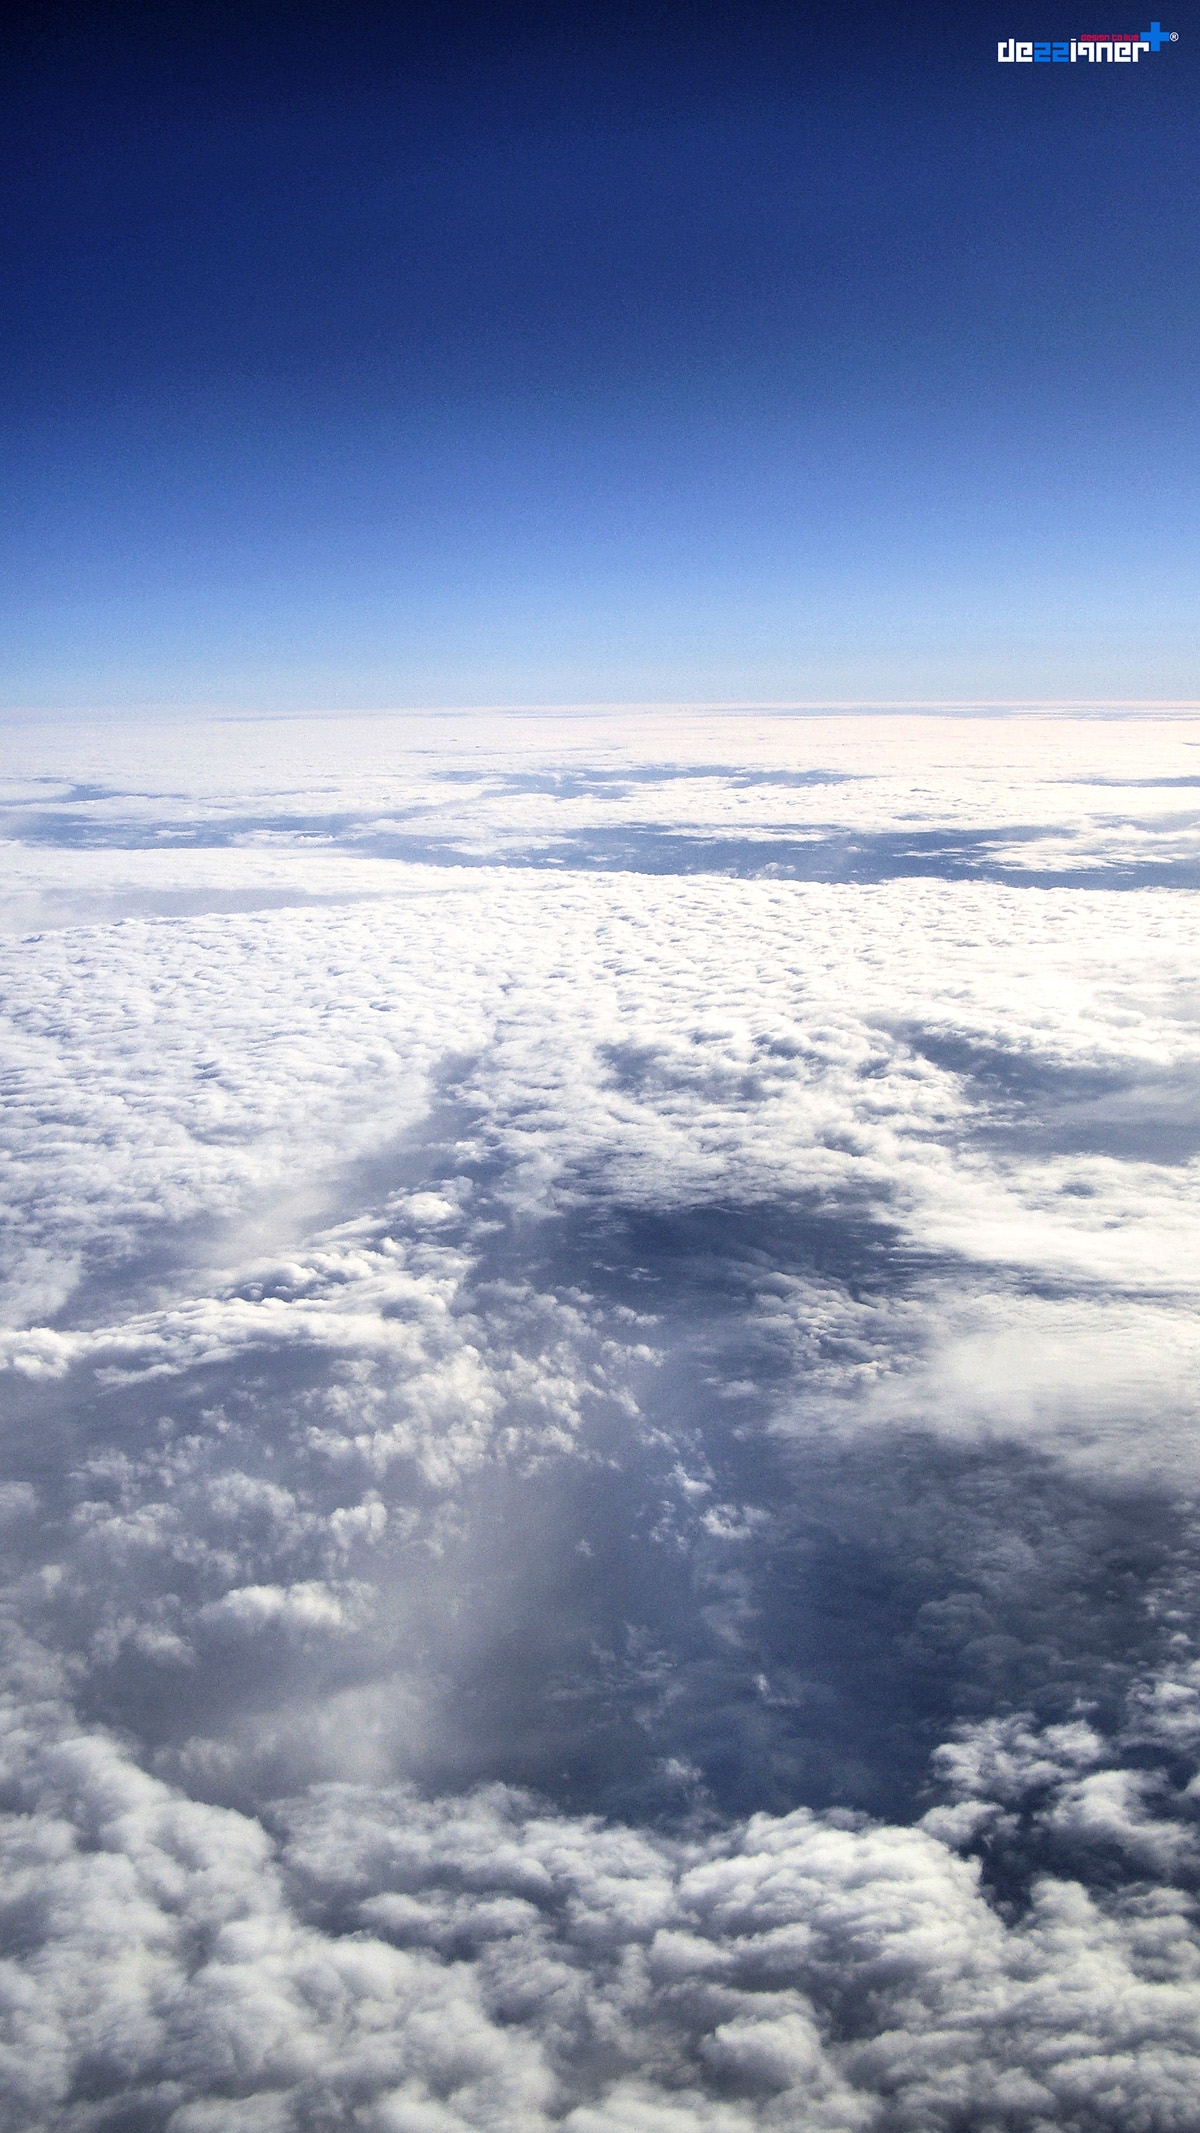 Adobe Portfolio Fly SKY blue plane Aerial clouds Sun norway egypt rays shadow dezzi9ner ezz osman digital Sony W300